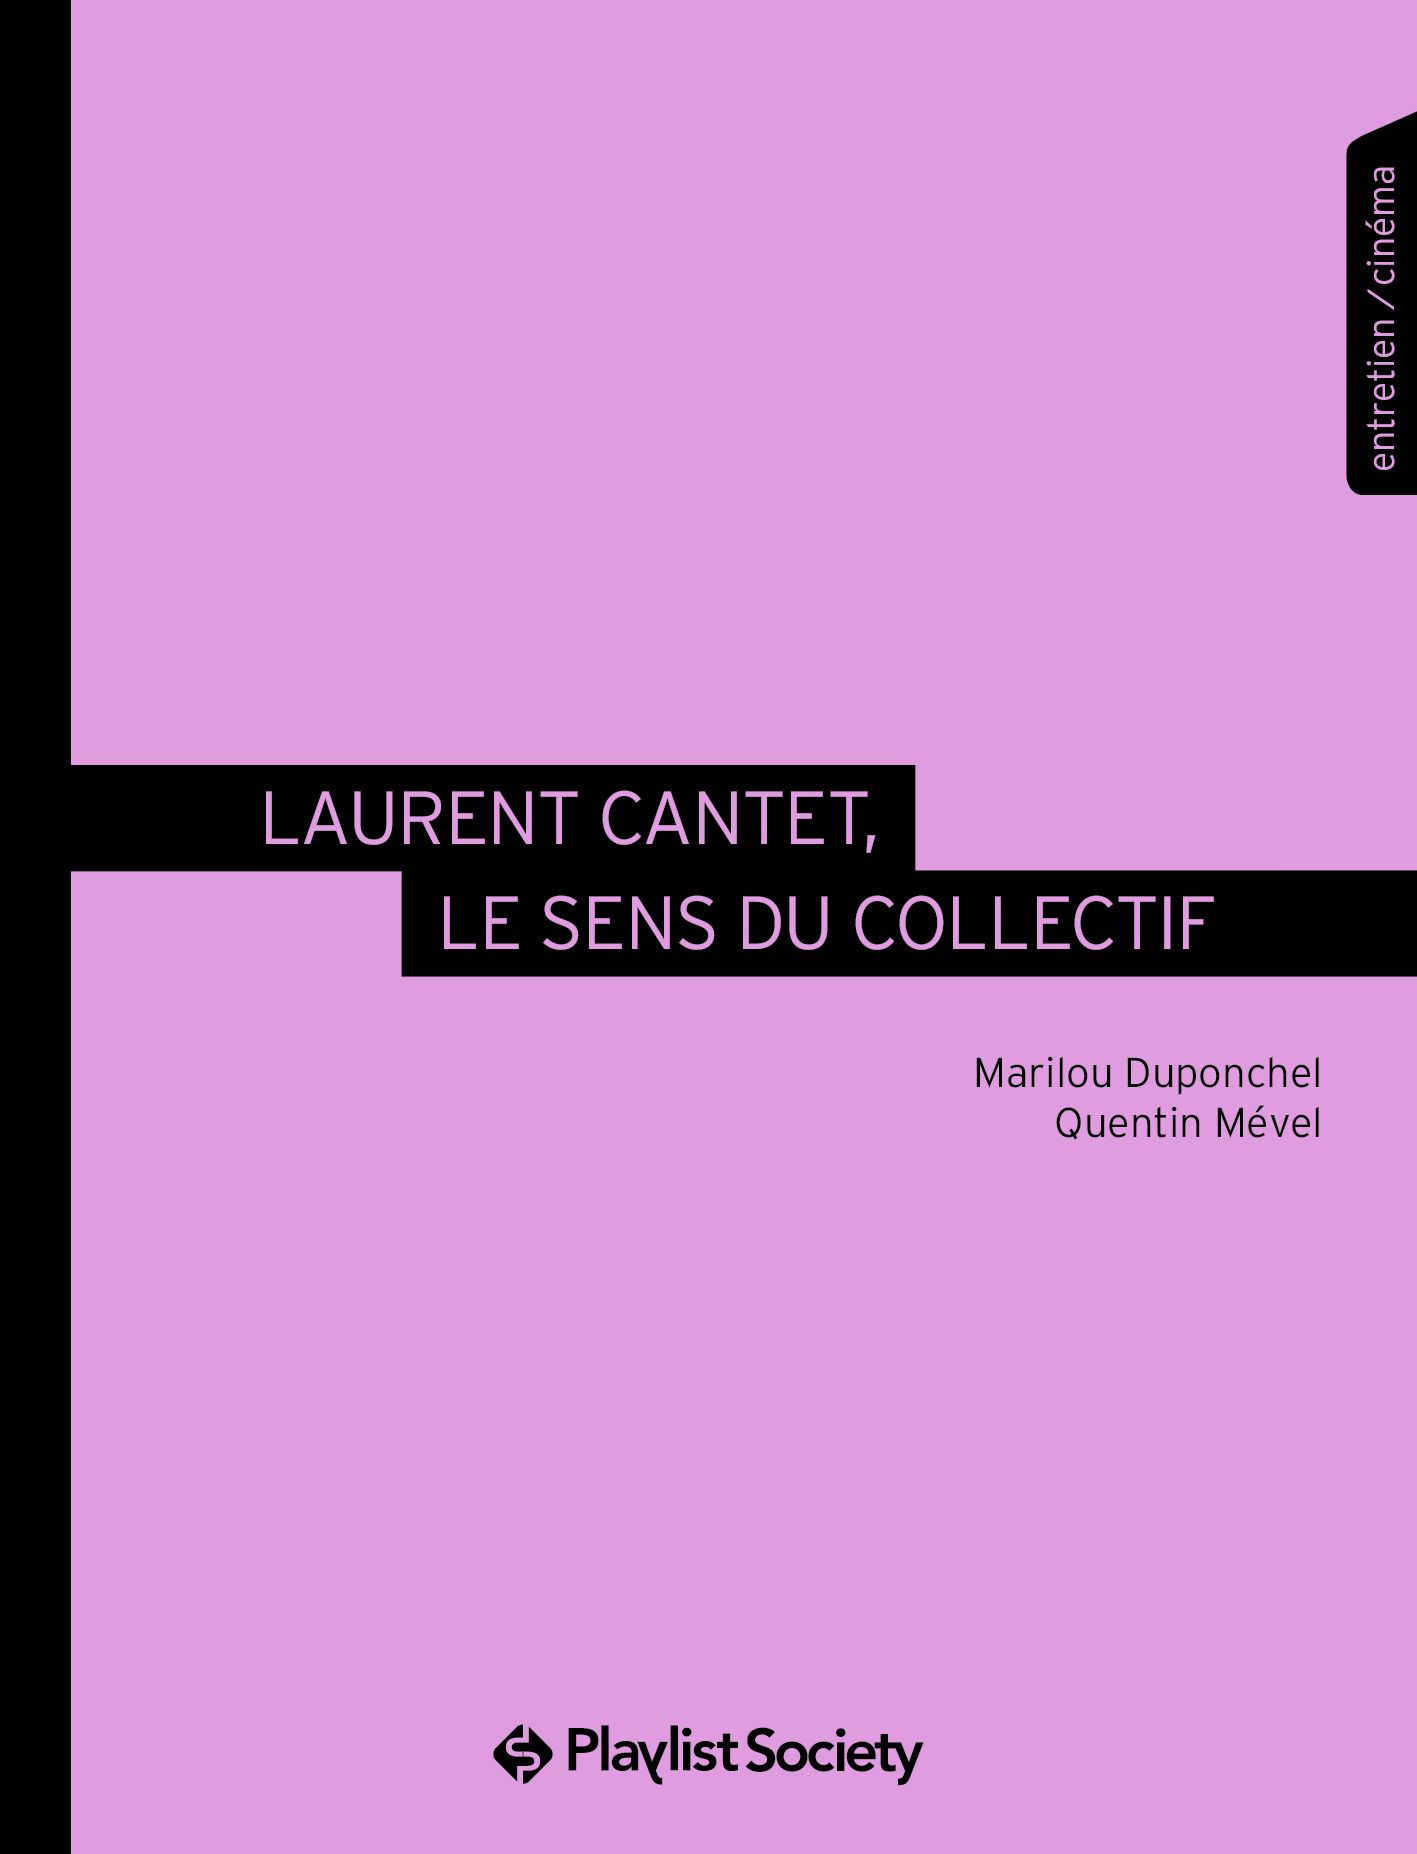 Laurent Cantet, le sens du collectif, Marilou Duponchel et Quentin Mével